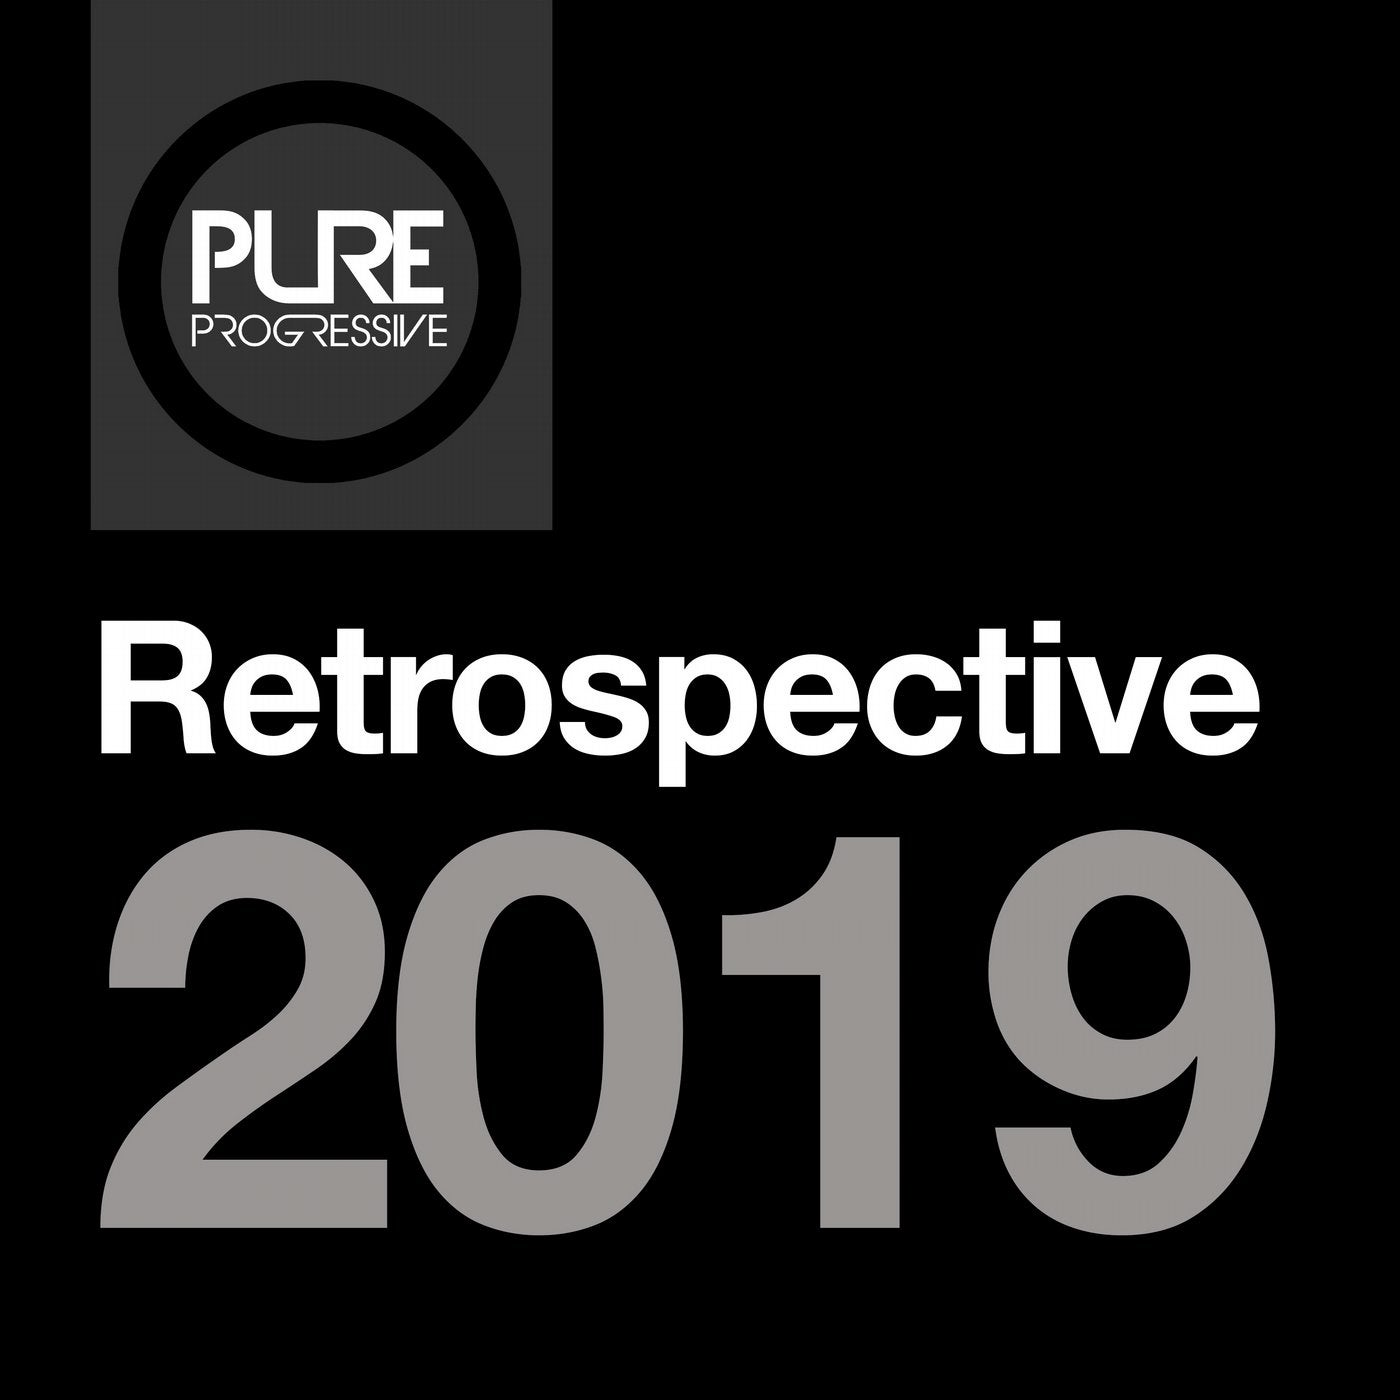 Pure Progressive Retrospective 2019